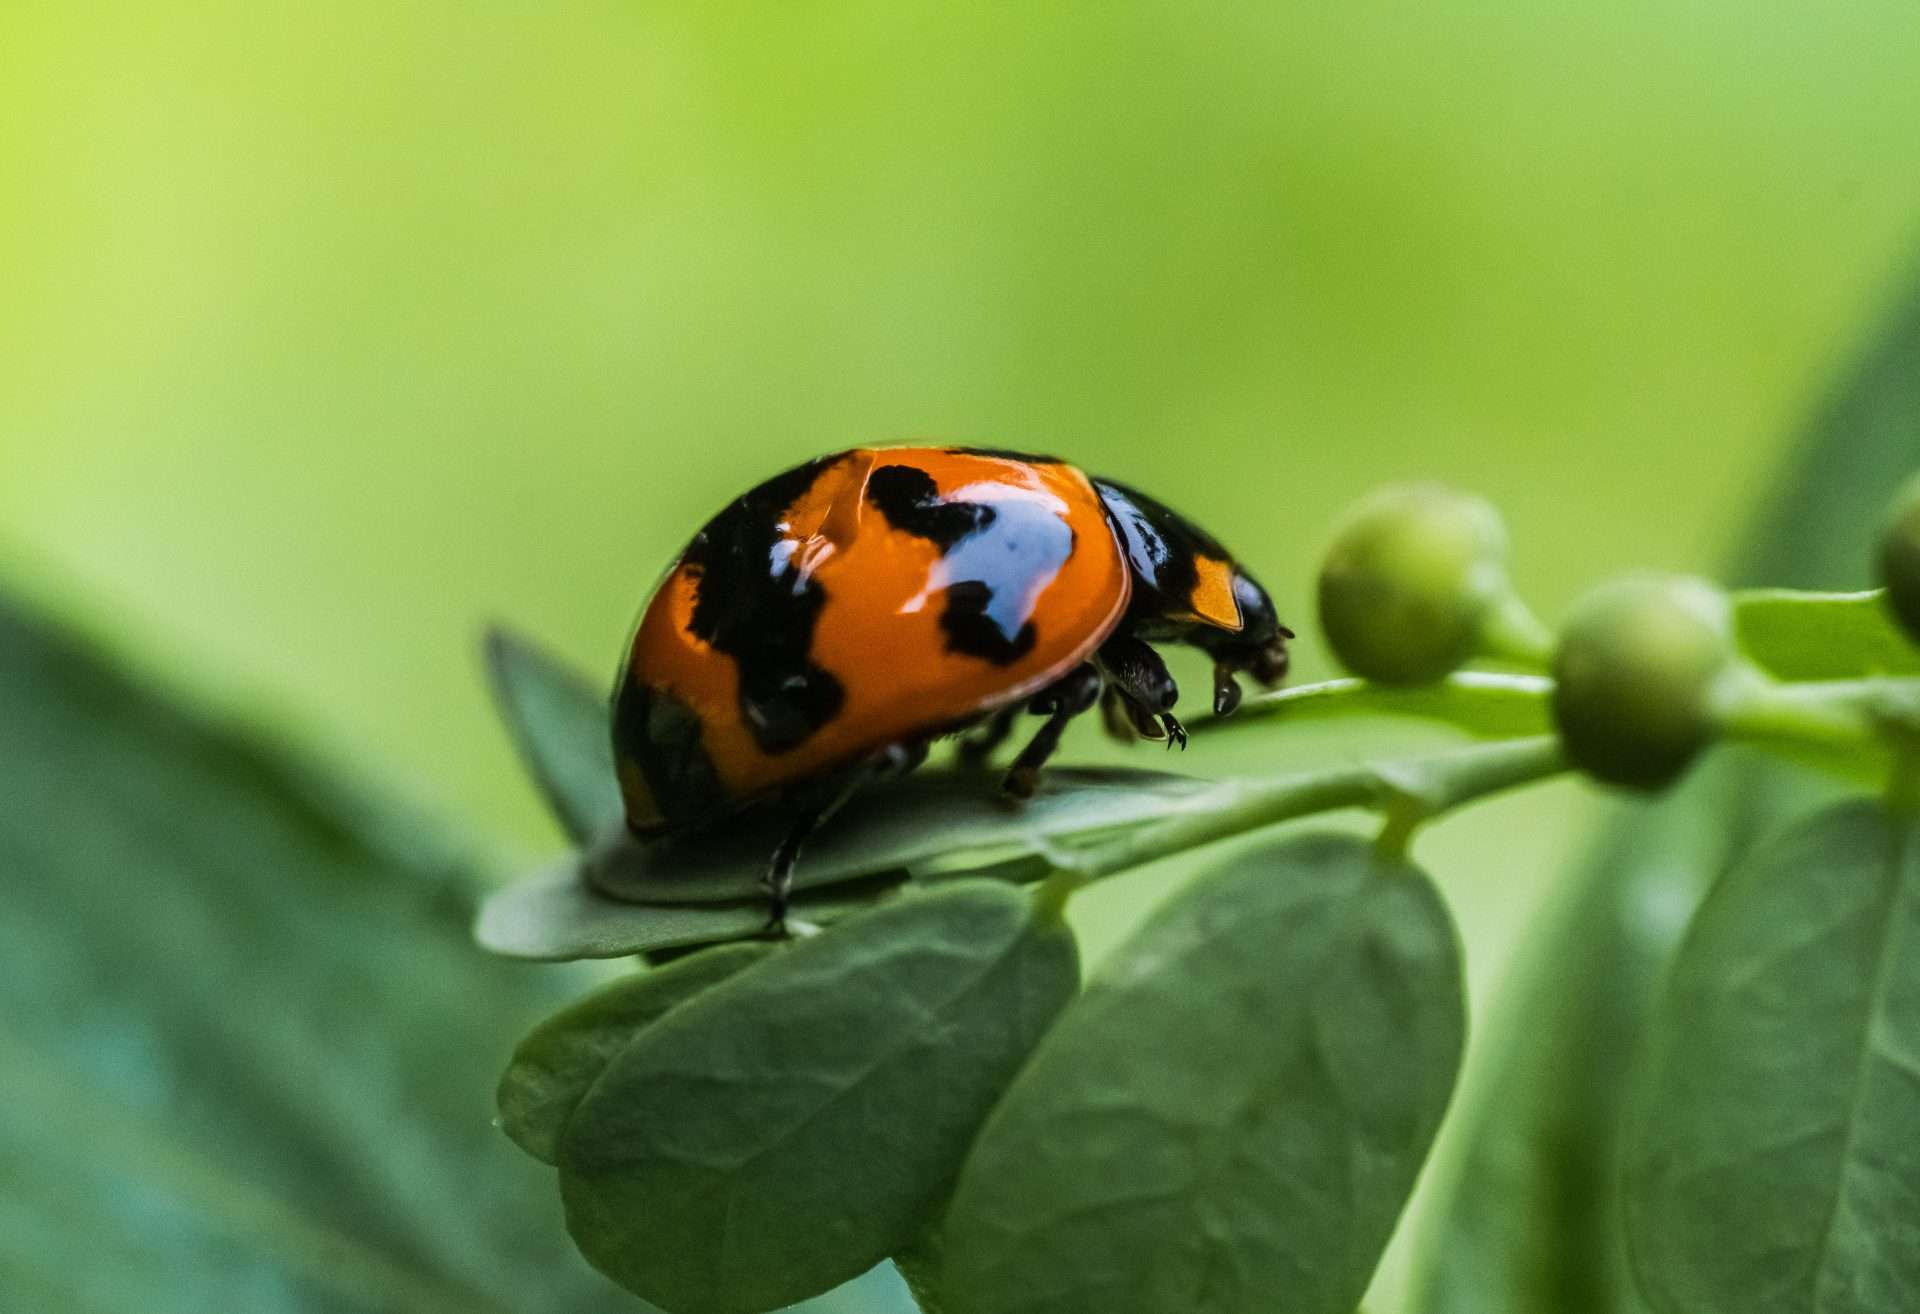 Ladybug crawling on lead.